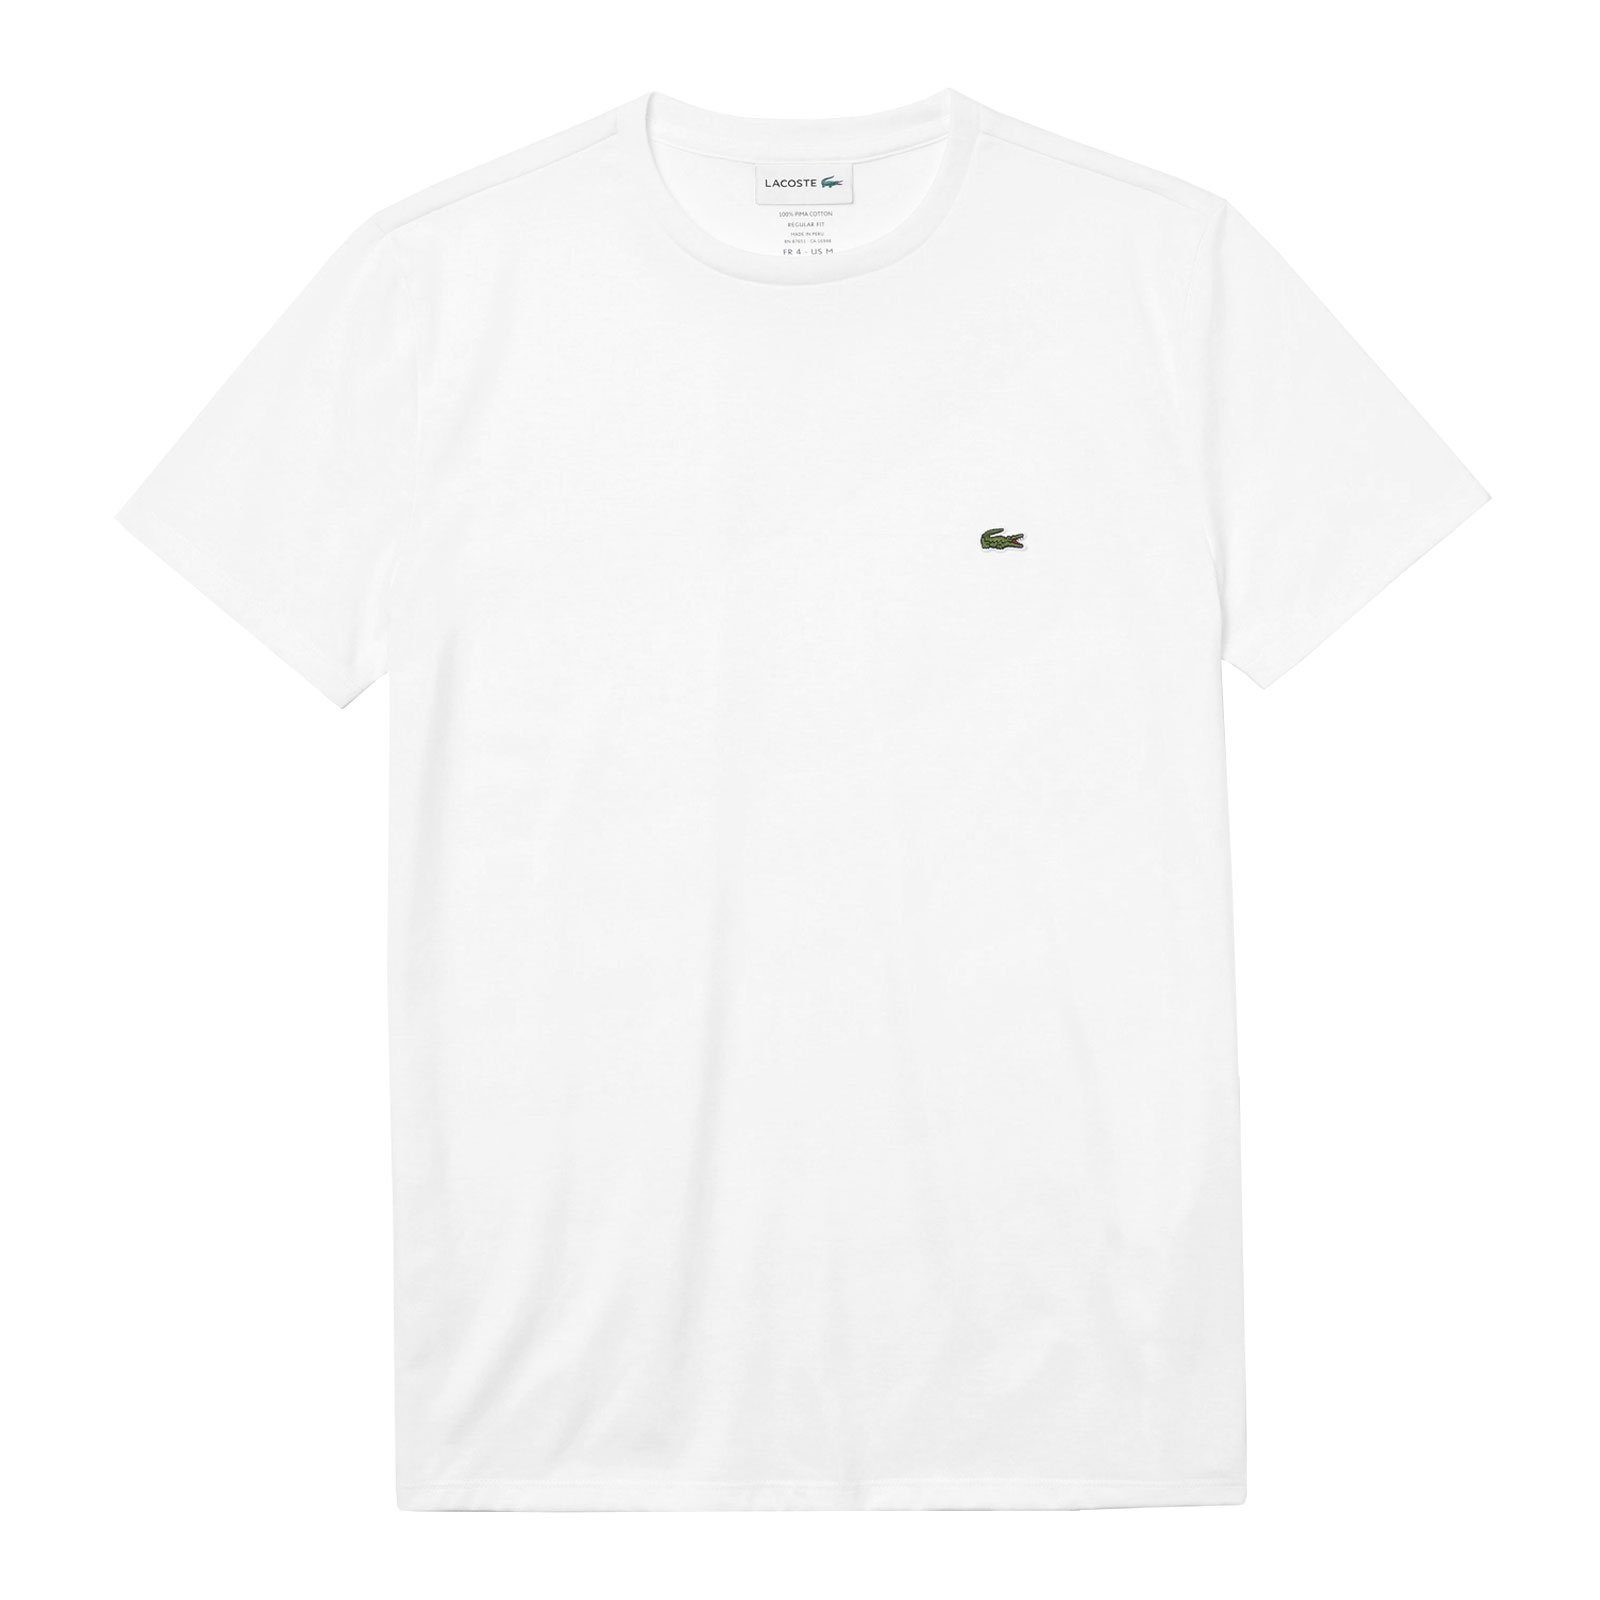 Cotton Neck Brust mit T-Shirt der Lacoste 001 kleinem Krokodil Crew white auf